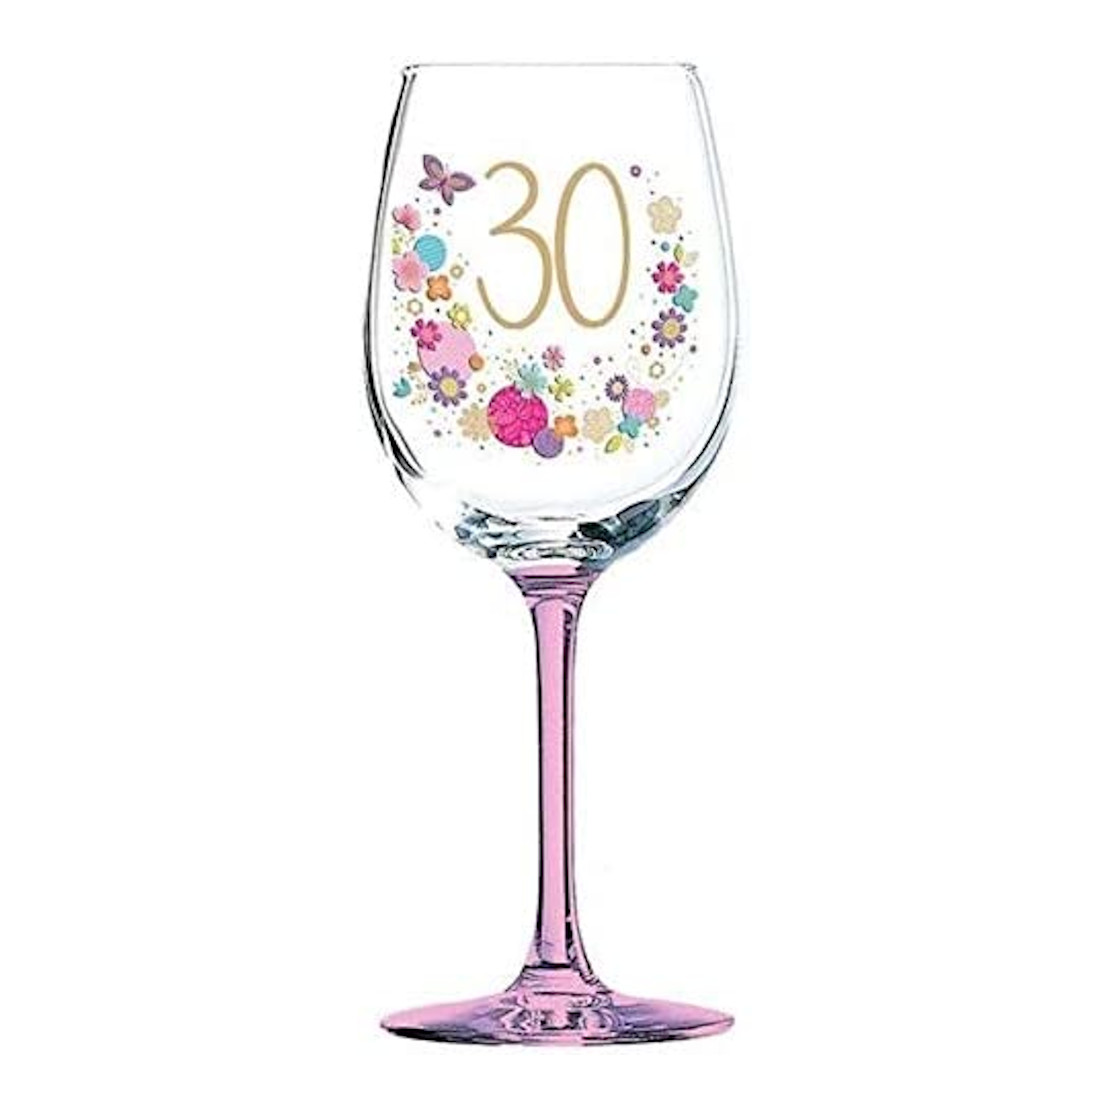 Lulu 30th Birthday Celebration Wine Glass